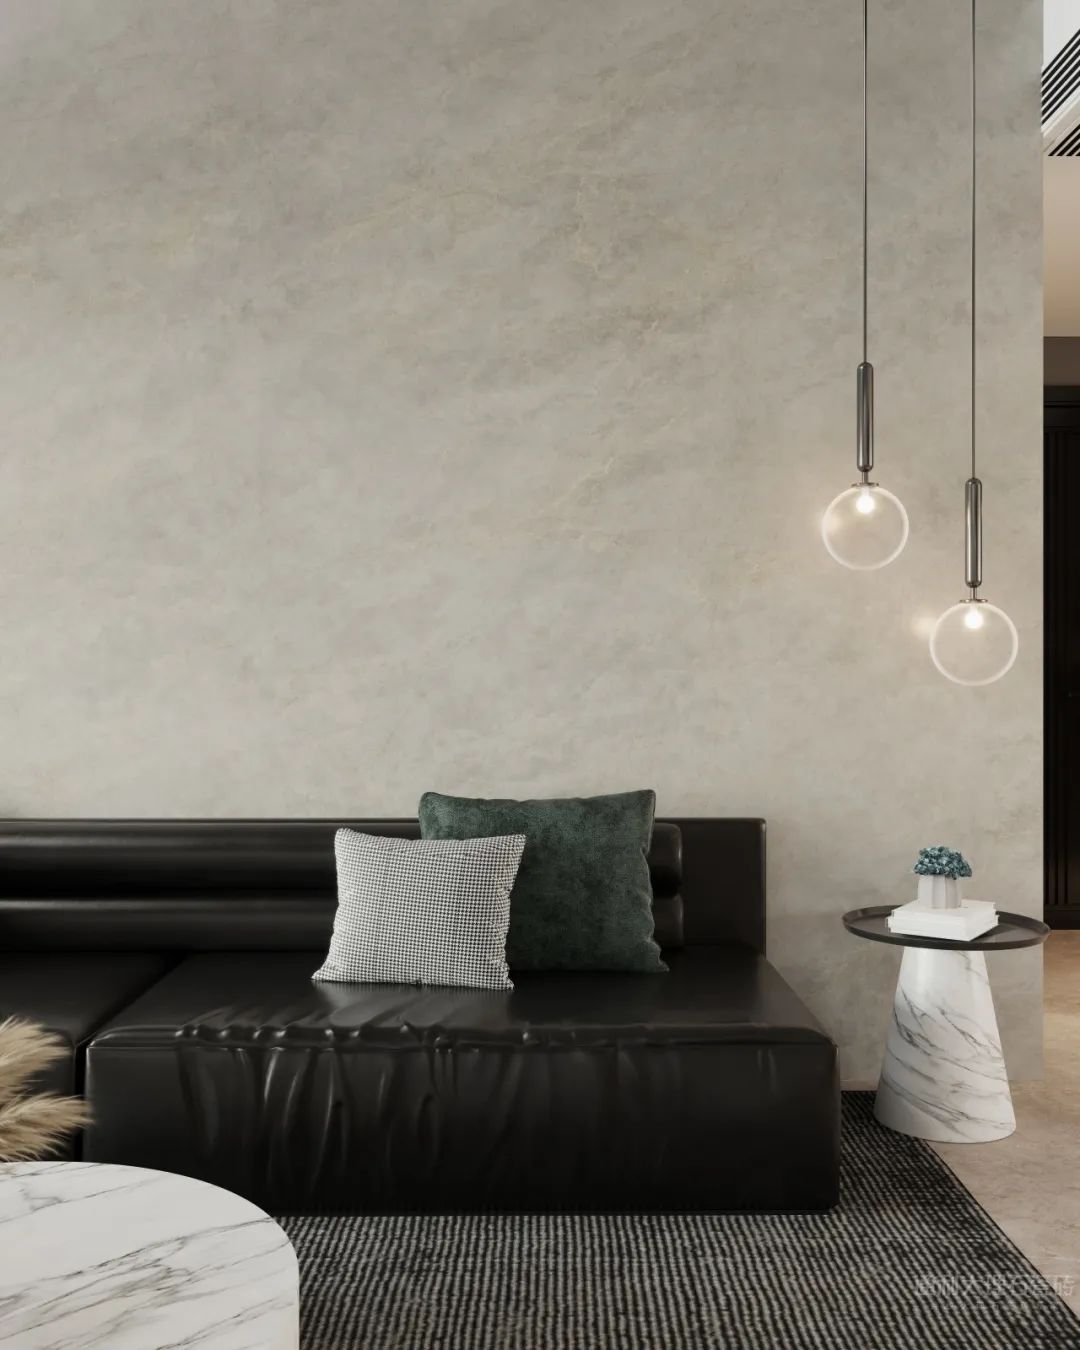 “发现连纹之美”系列之通利连纹大理石瓷砖在客厅空间的应用(图5)